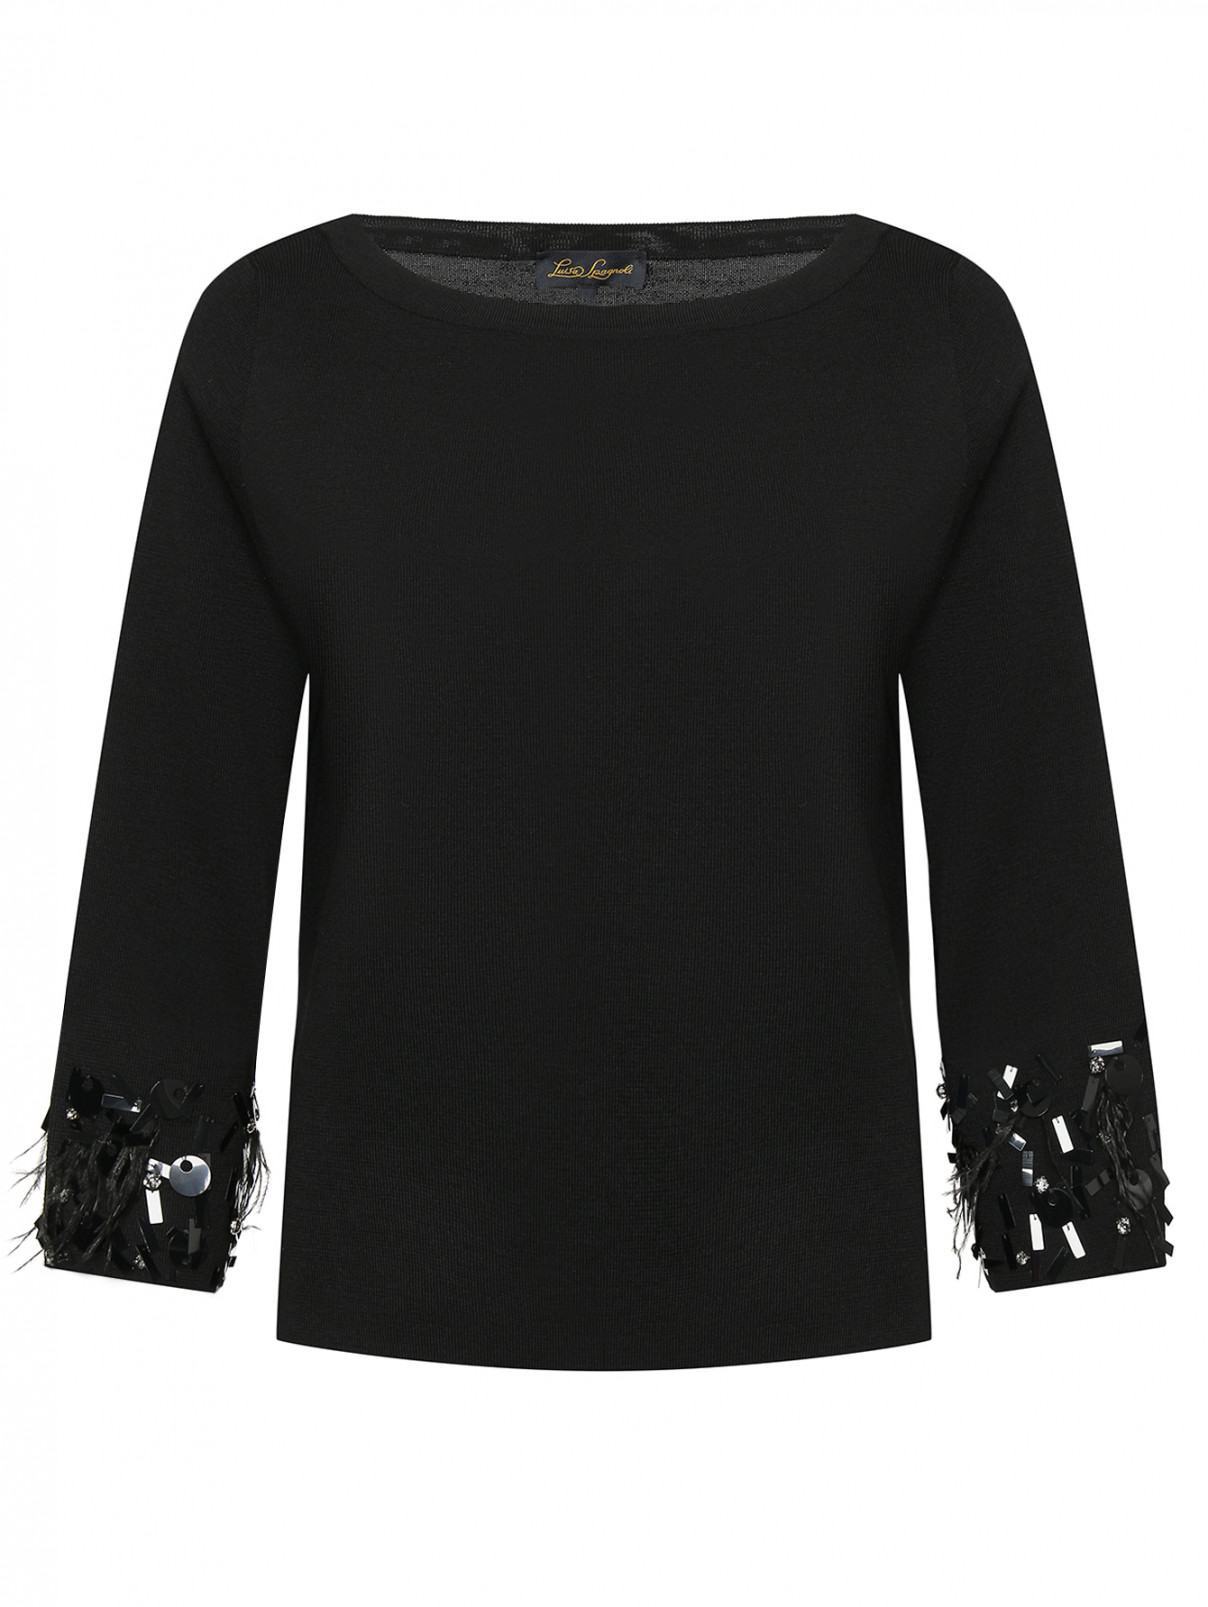 Джемпер из чистой шерсти с декором на рукавах Luisa Spagnoli  –  Общий вид  – Цвет:  Черный